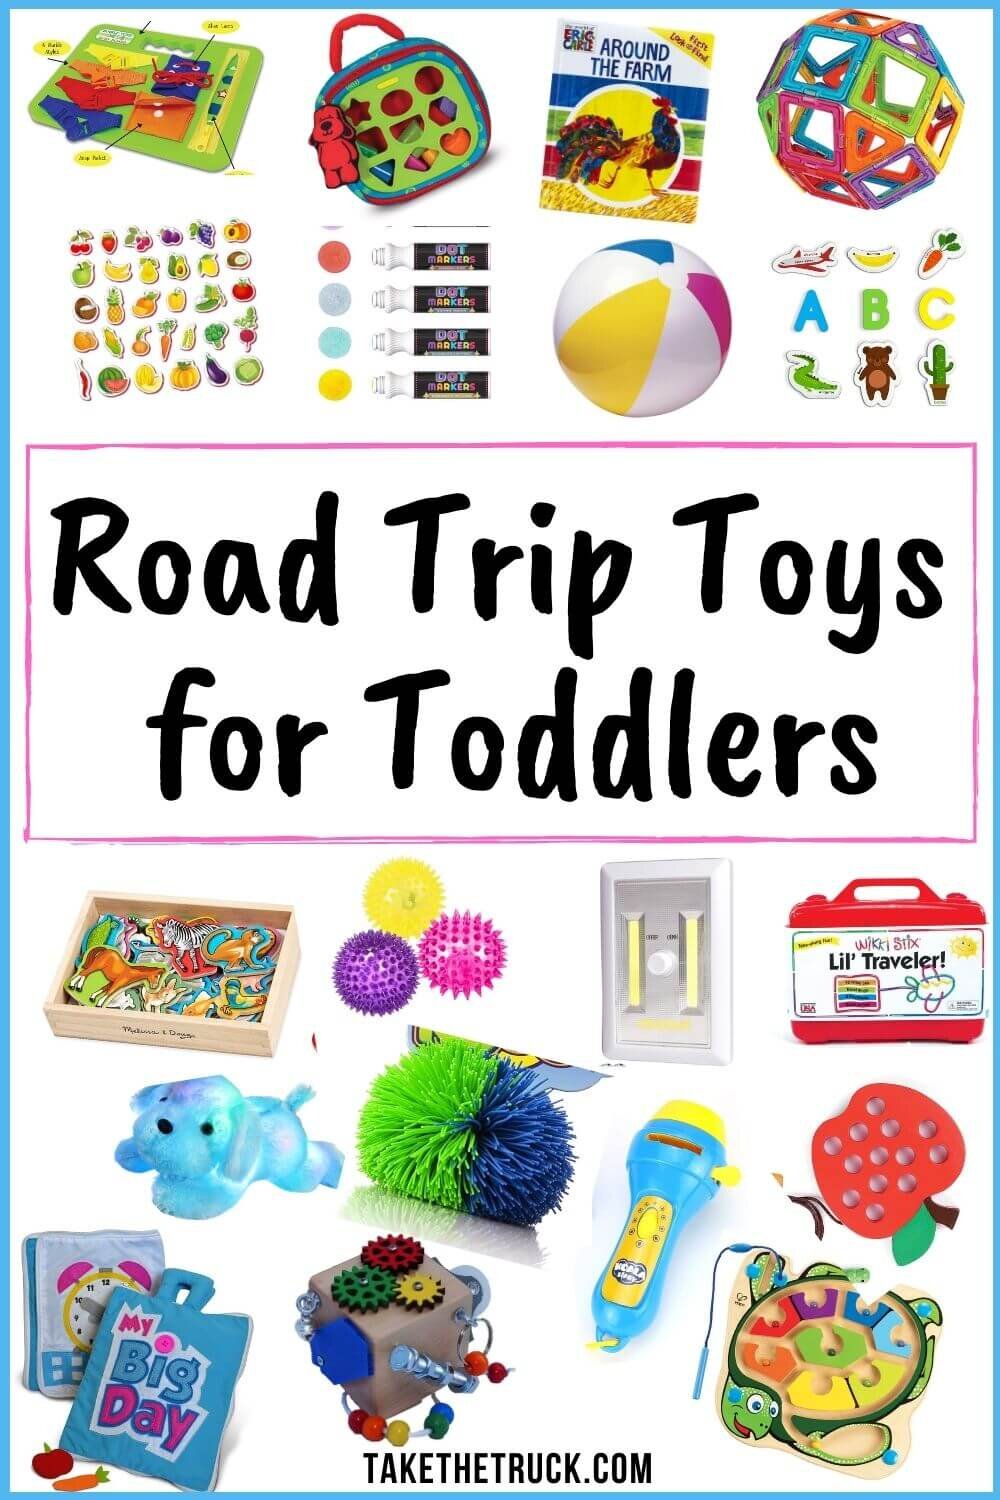 Toddler Road Trip Activities